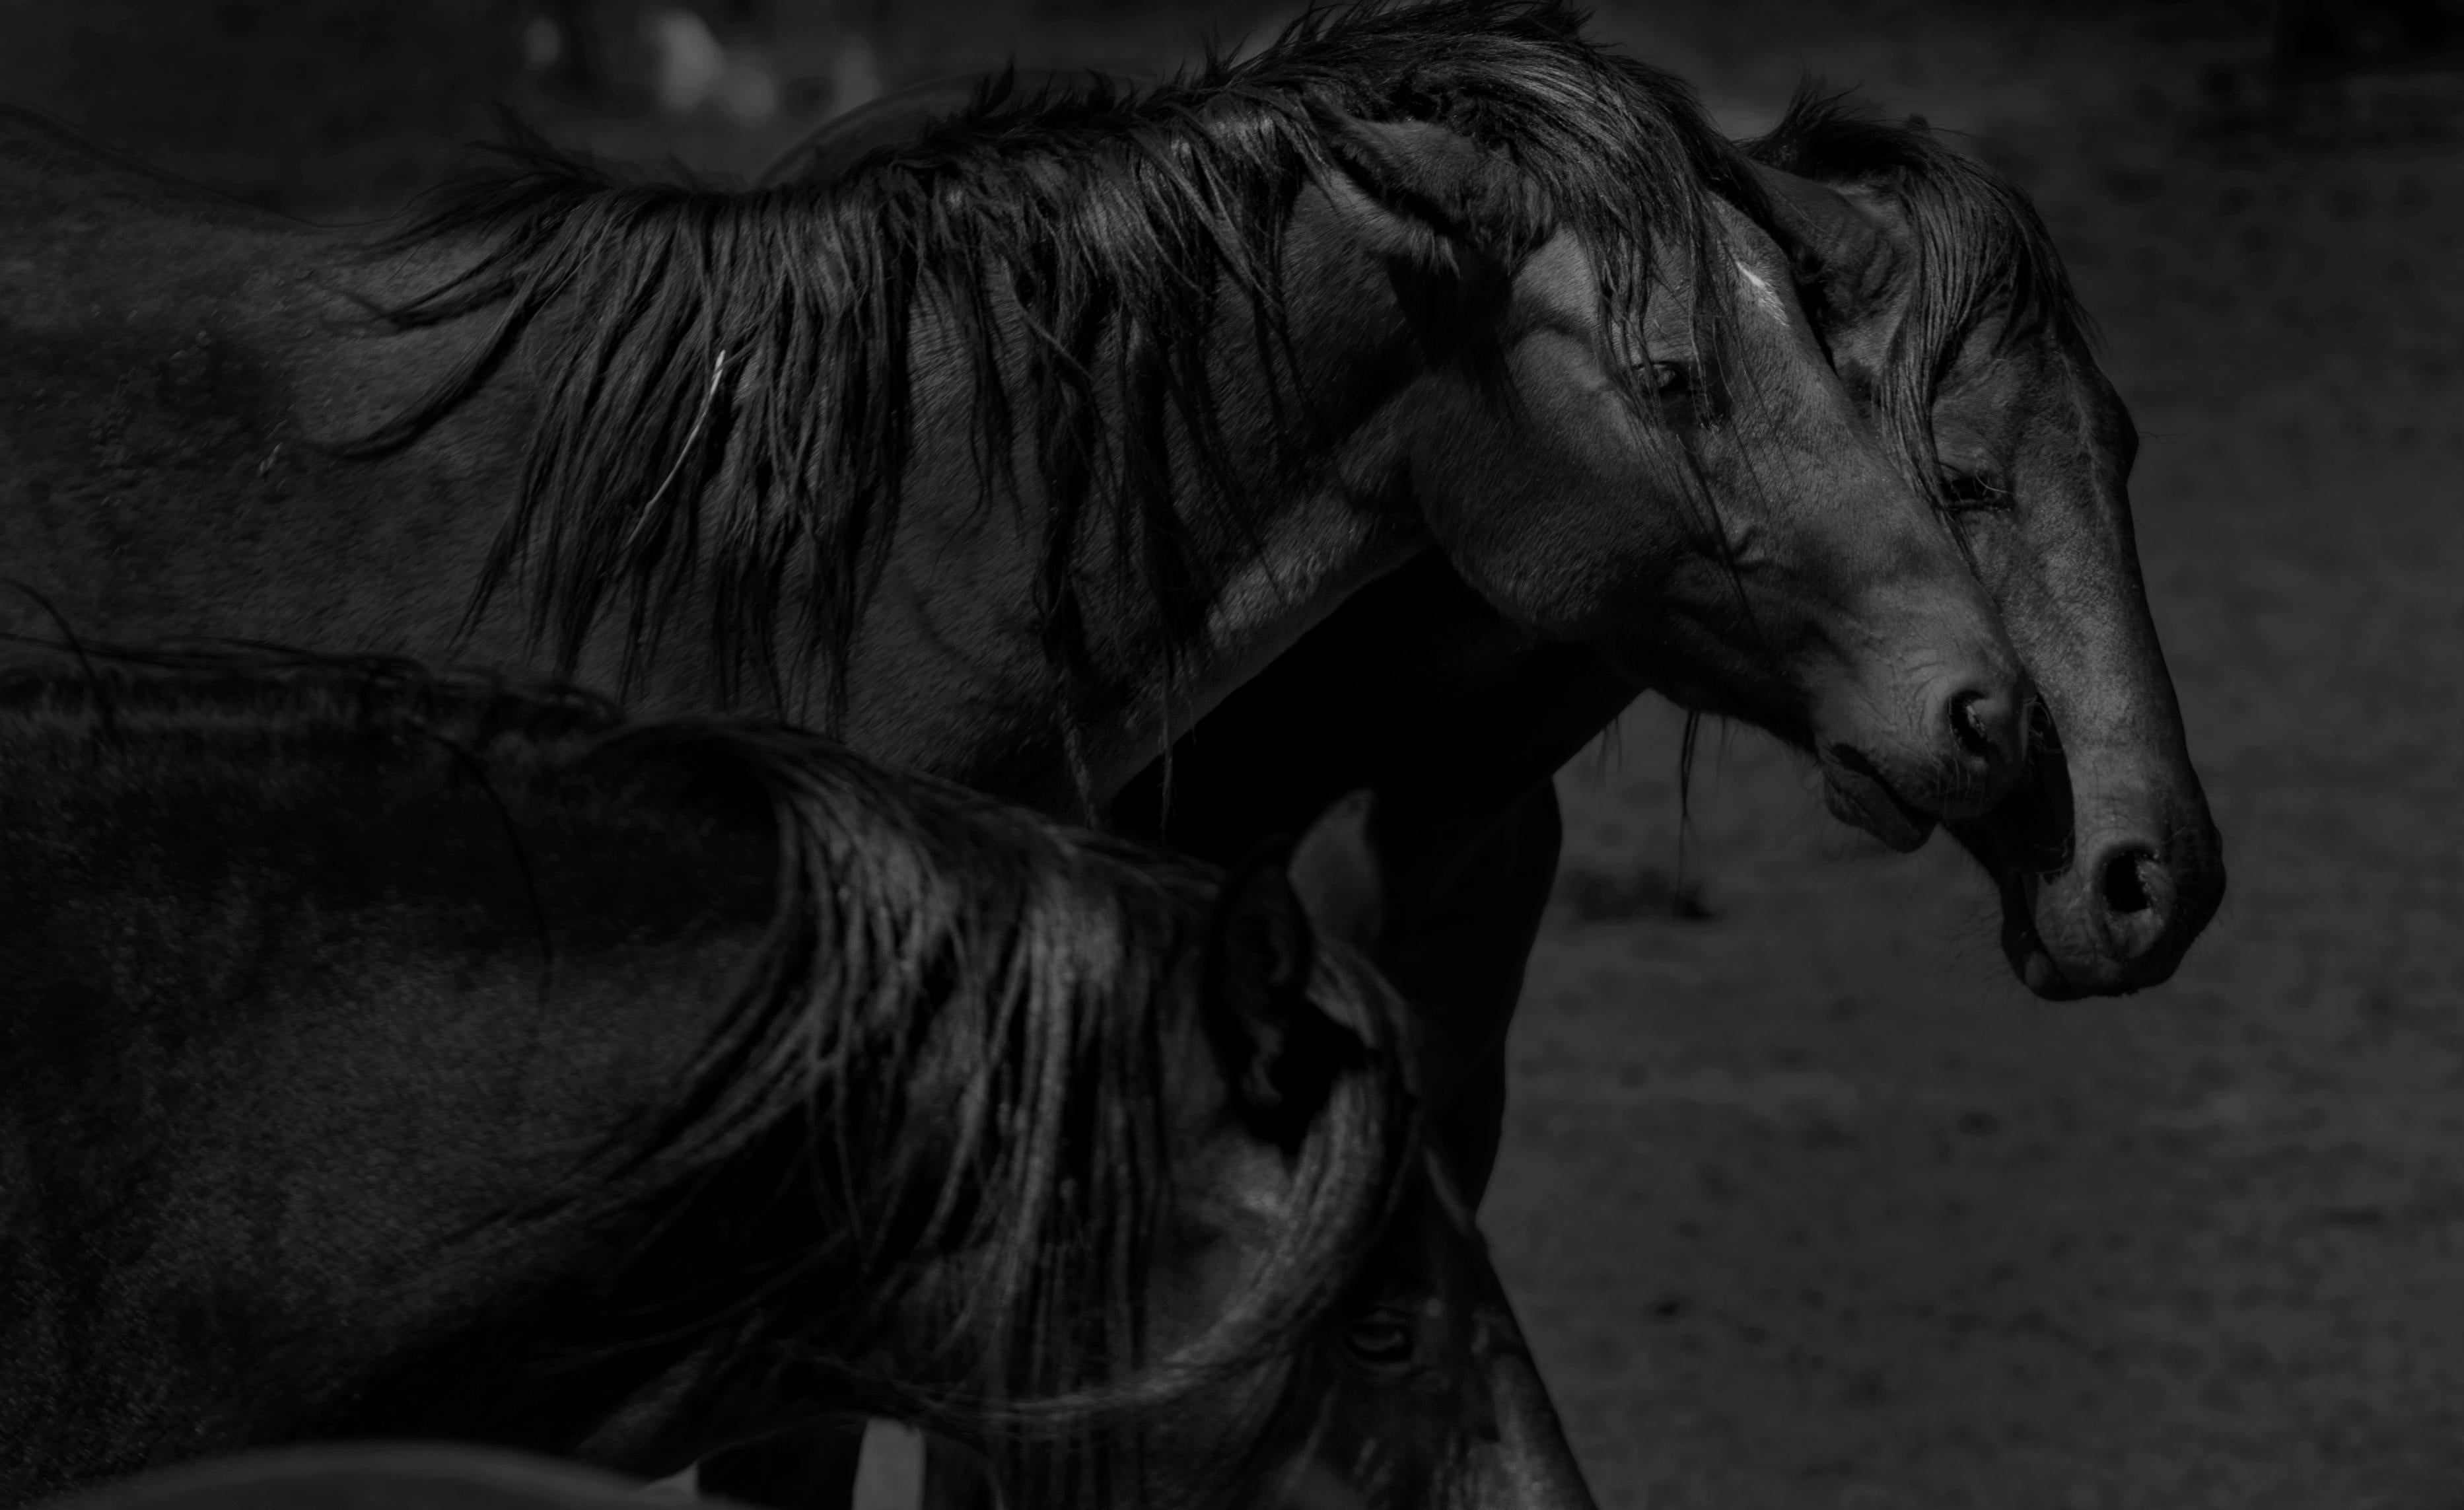 Shane Russeck Animal Print – Dunkle Pferde „36x48“ Schwarz-Weiß-Fotografie Wildpferde, Senf, Fotografie 